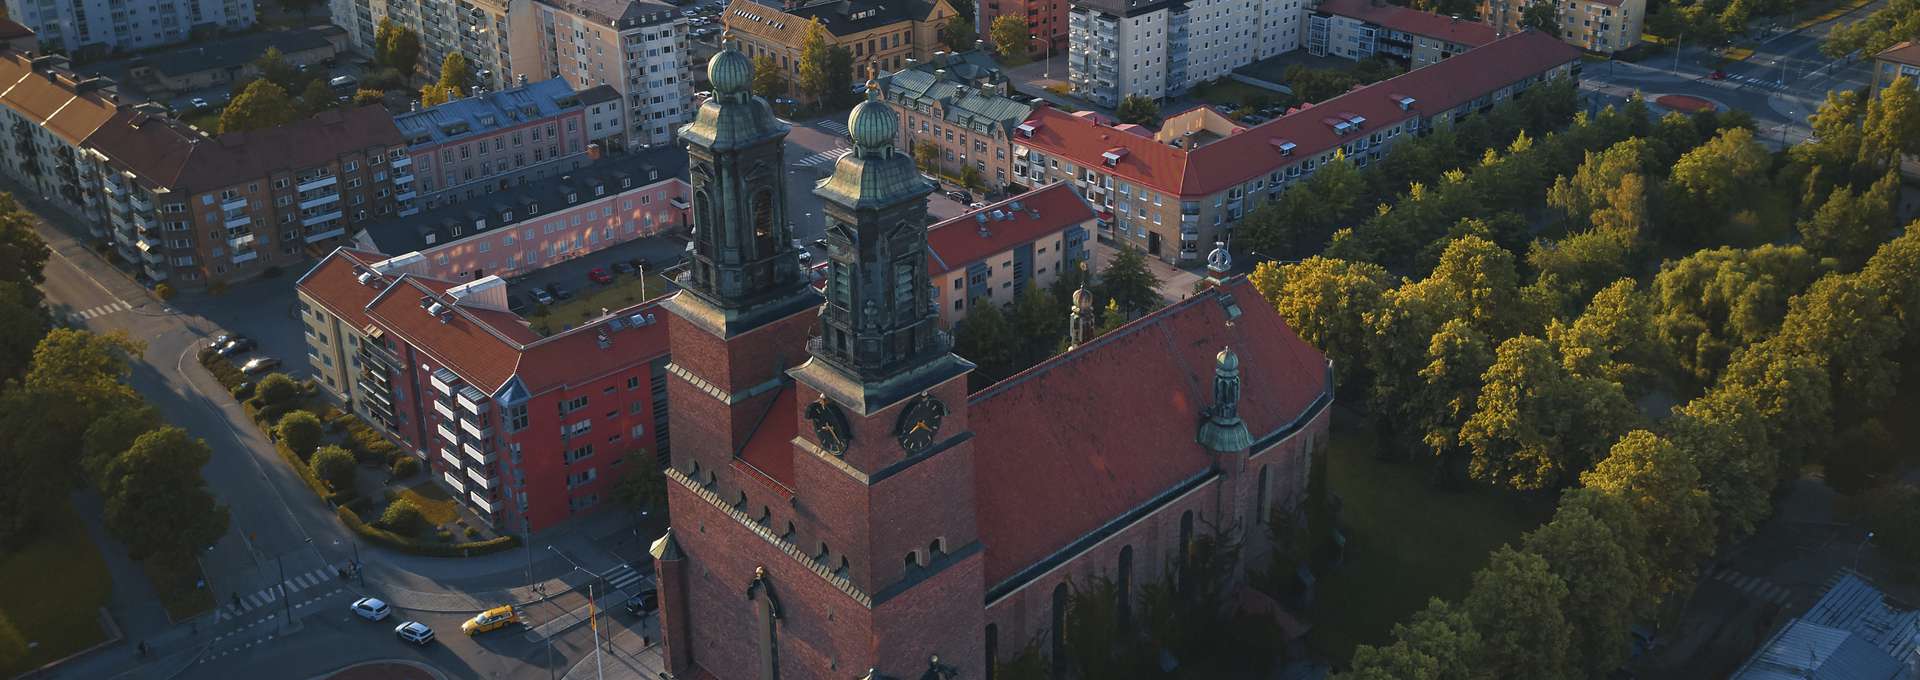 Stor kyrka med två torn i tegel